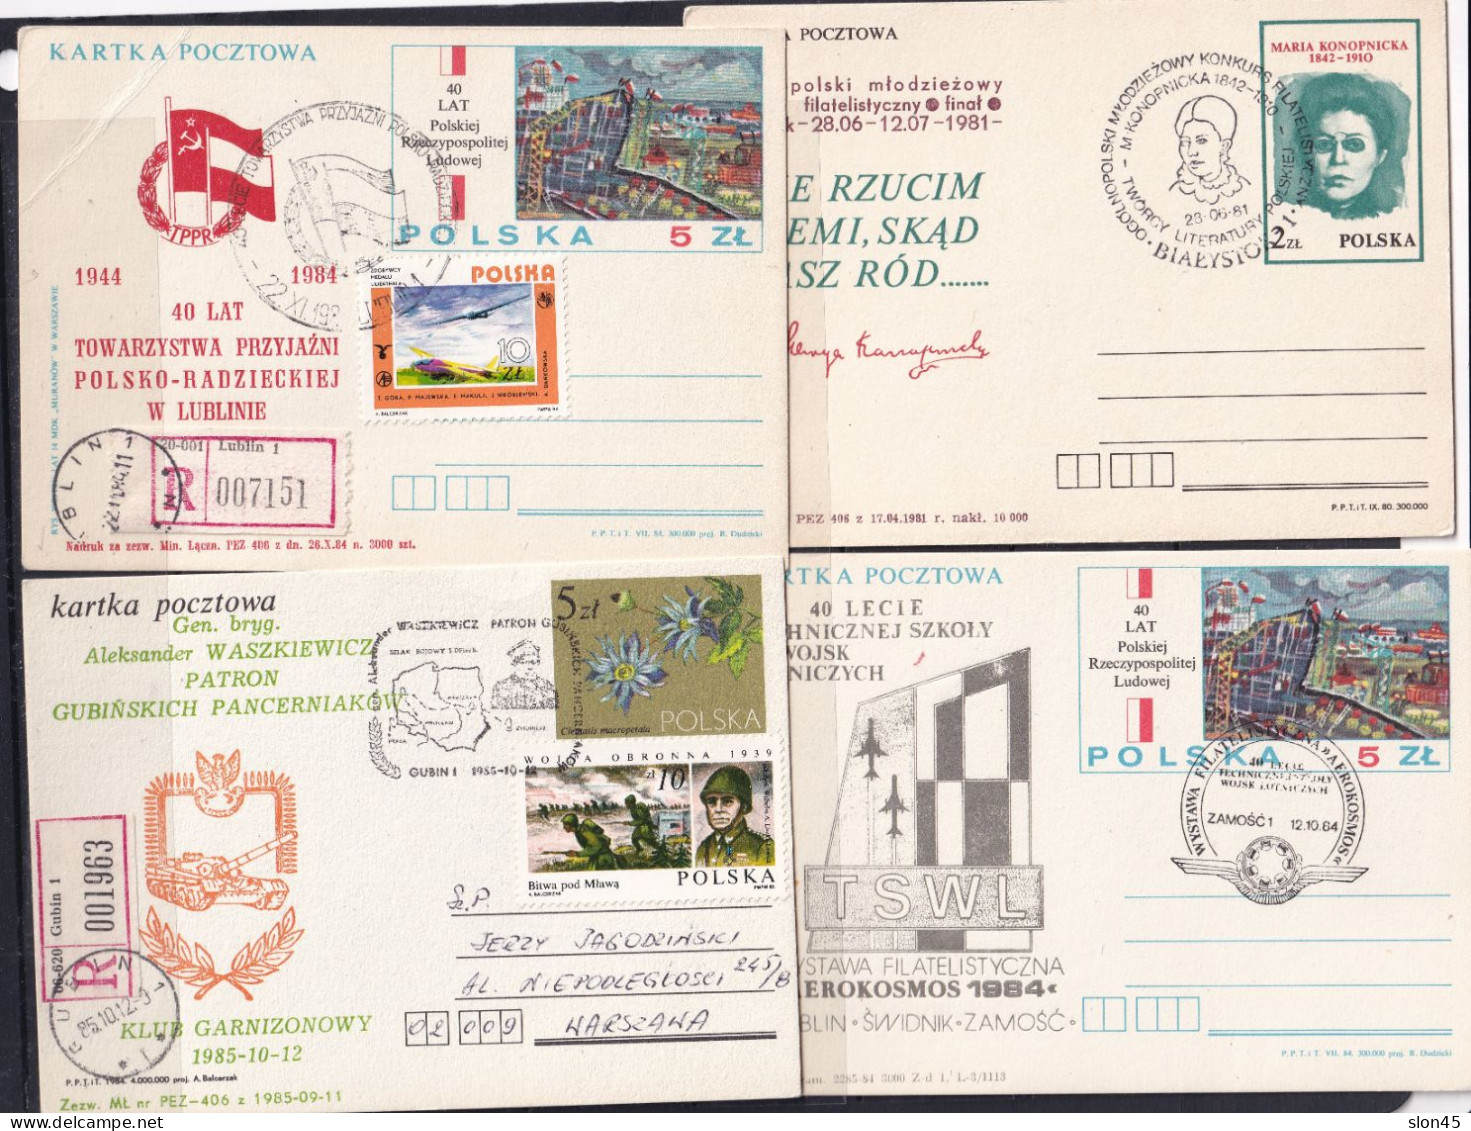 Poland 10 Postal Stationary Cards Special Cancel 16118 - Poland